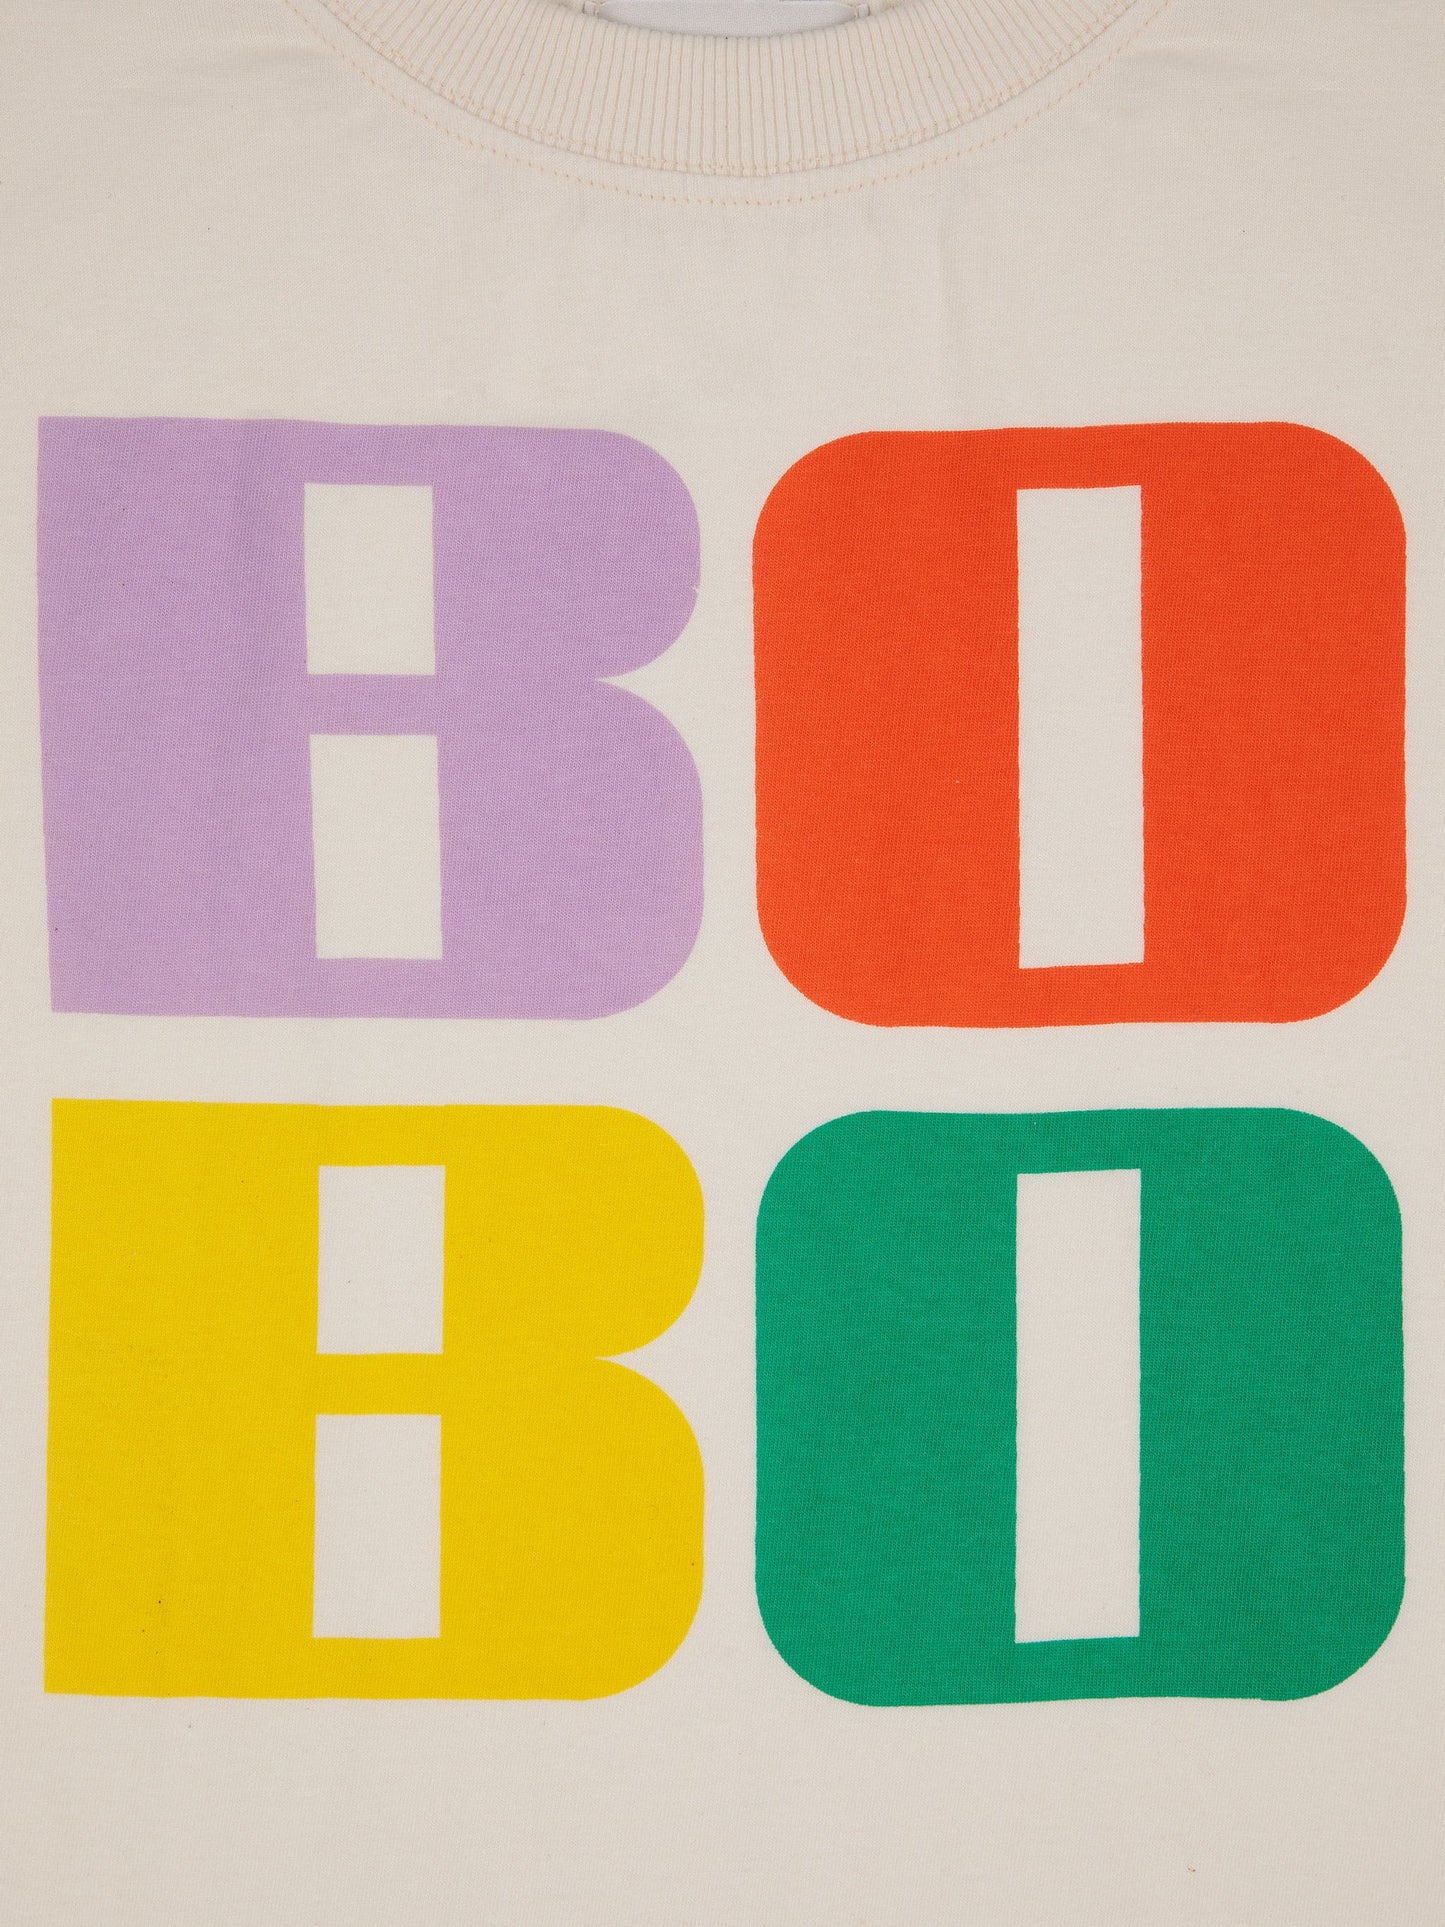 Bobo Bright T-shirt